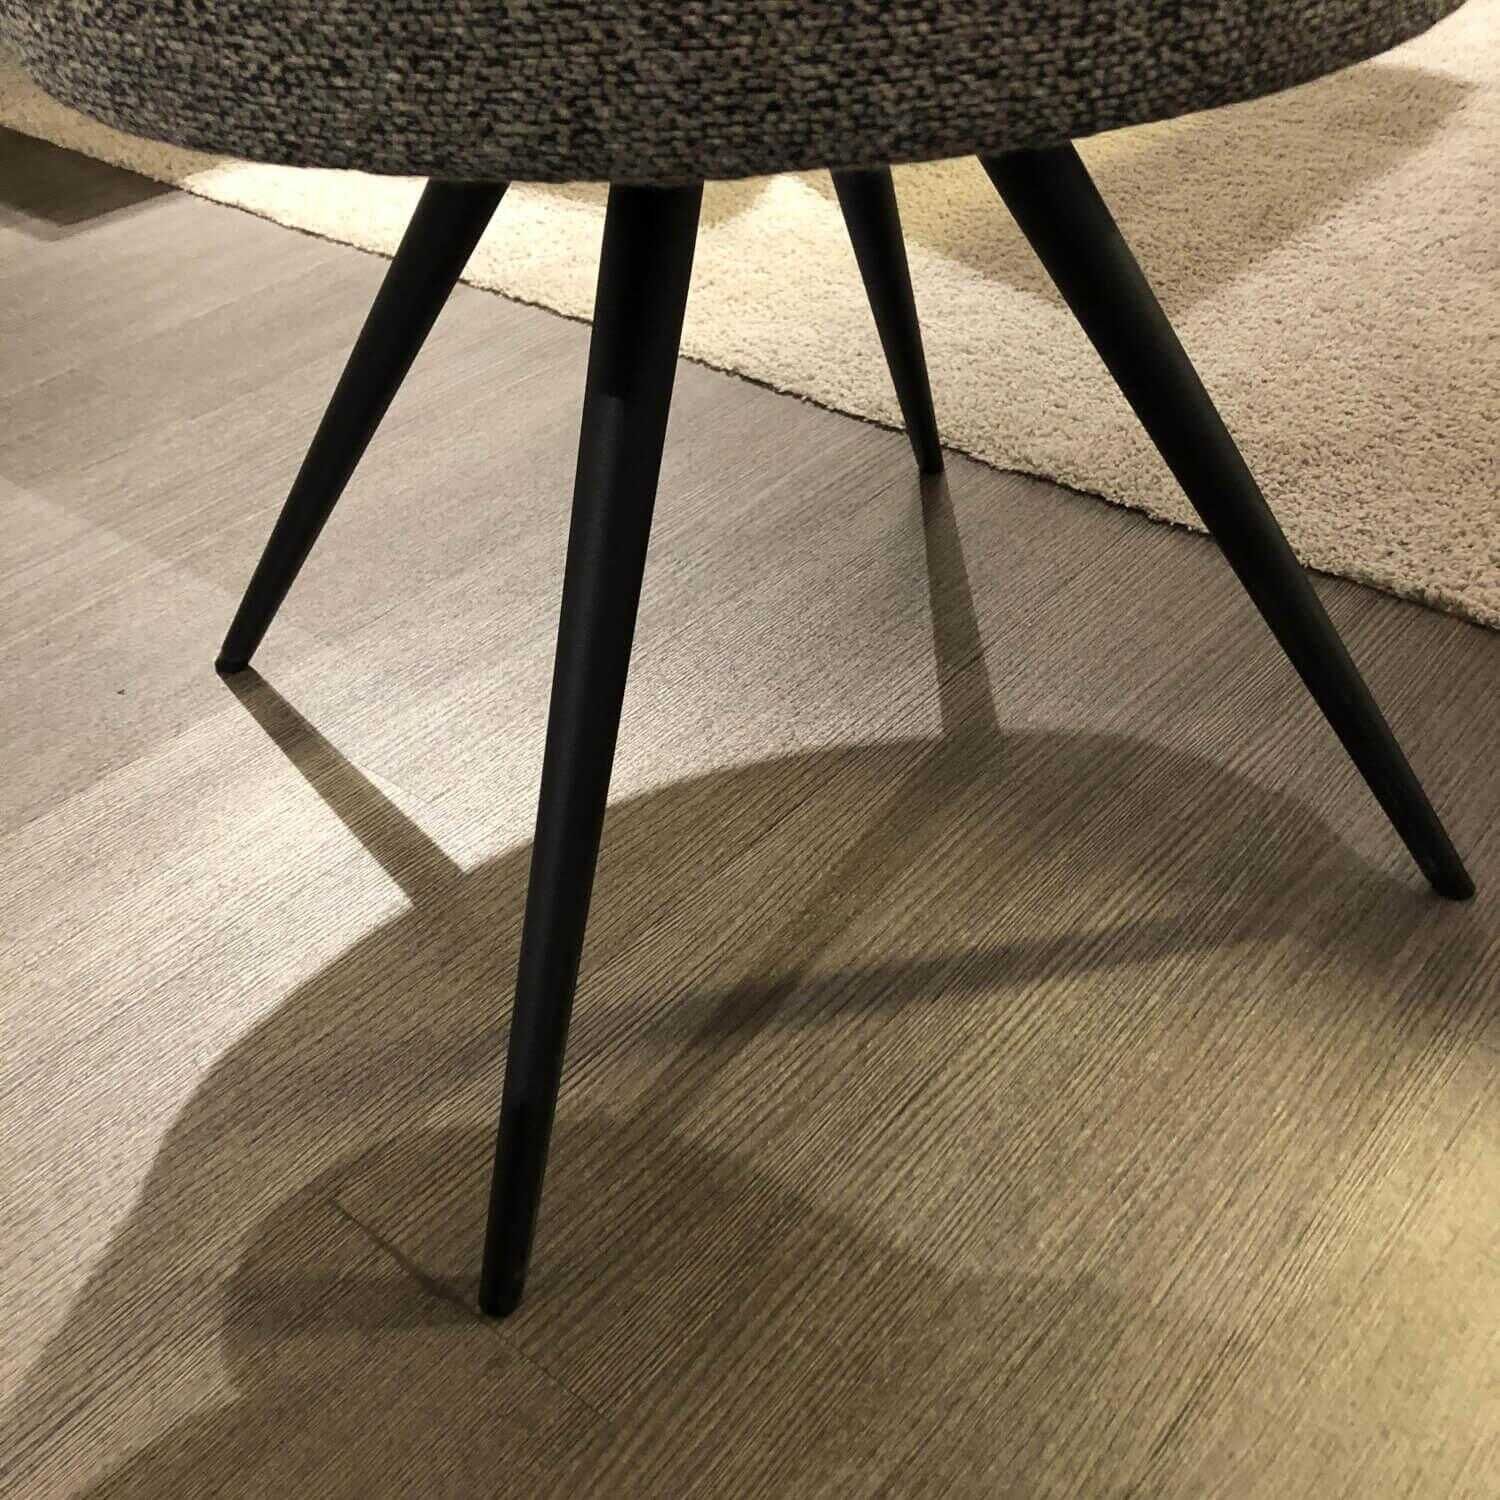 Essgruppe Tisch Ausziehbar Platte Keramik Beton mit 6 Stühlen Stoff Grau